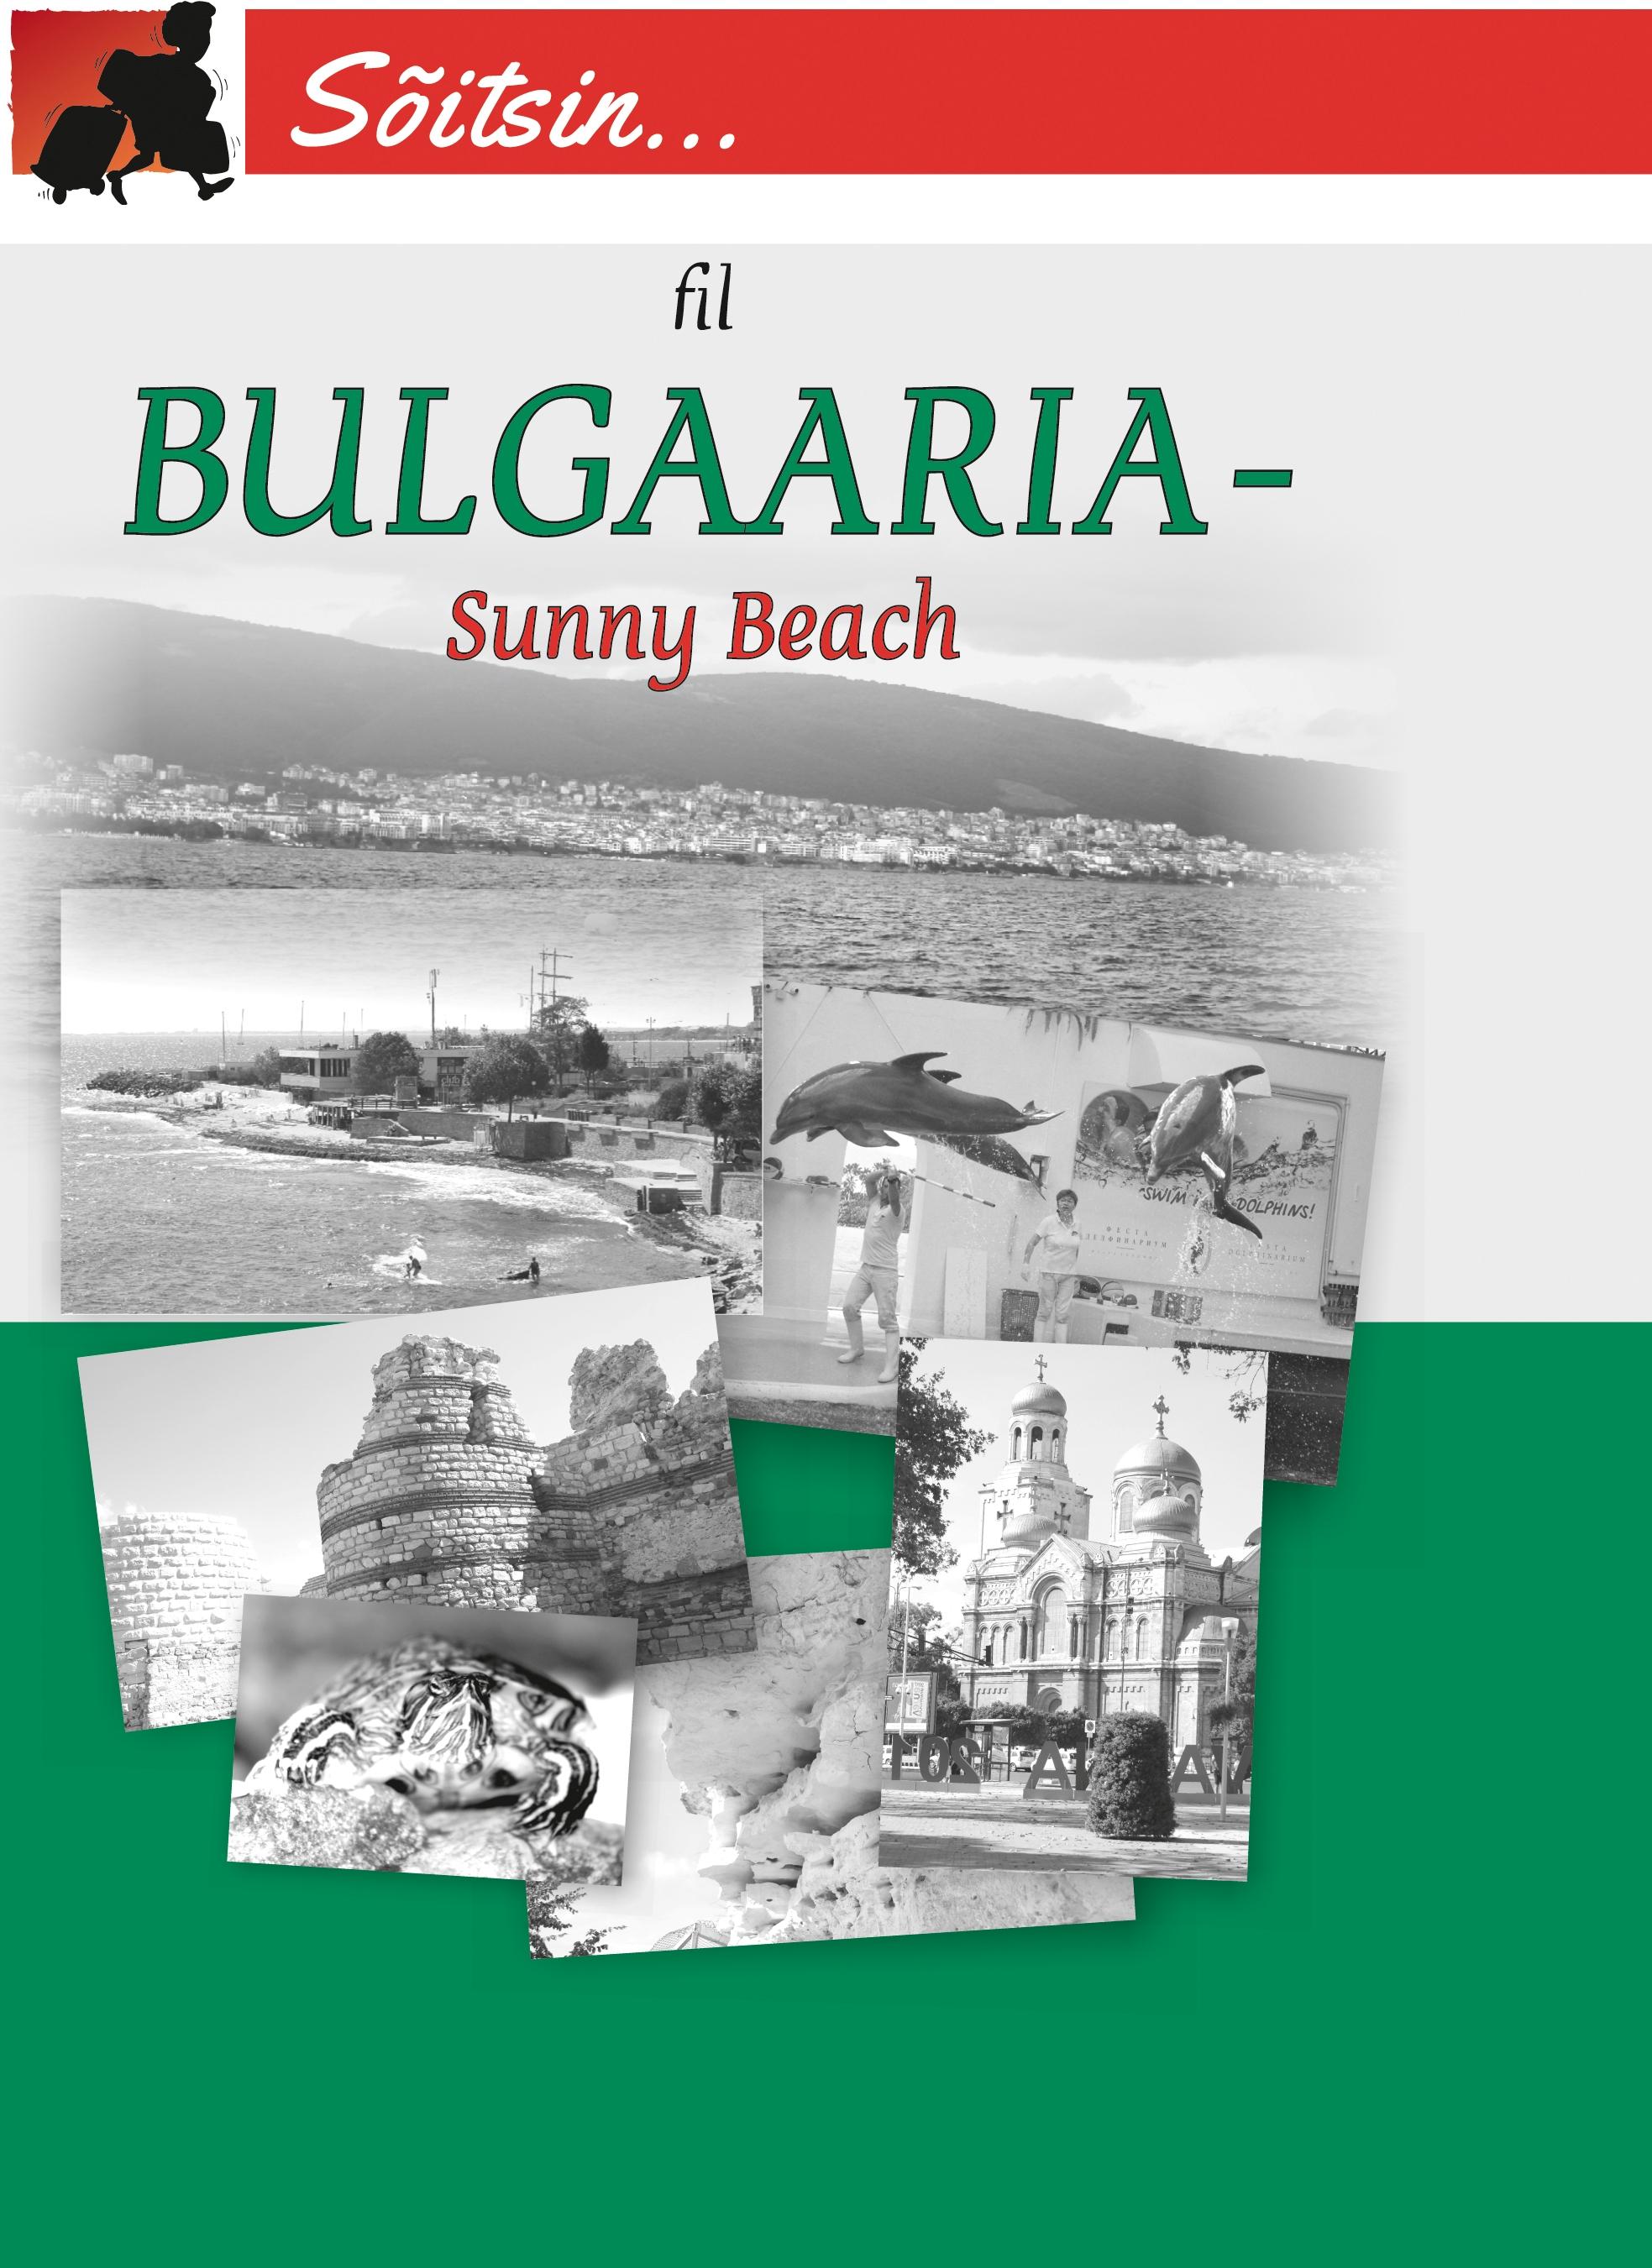 BULGAARIA - SUNNY BEACH